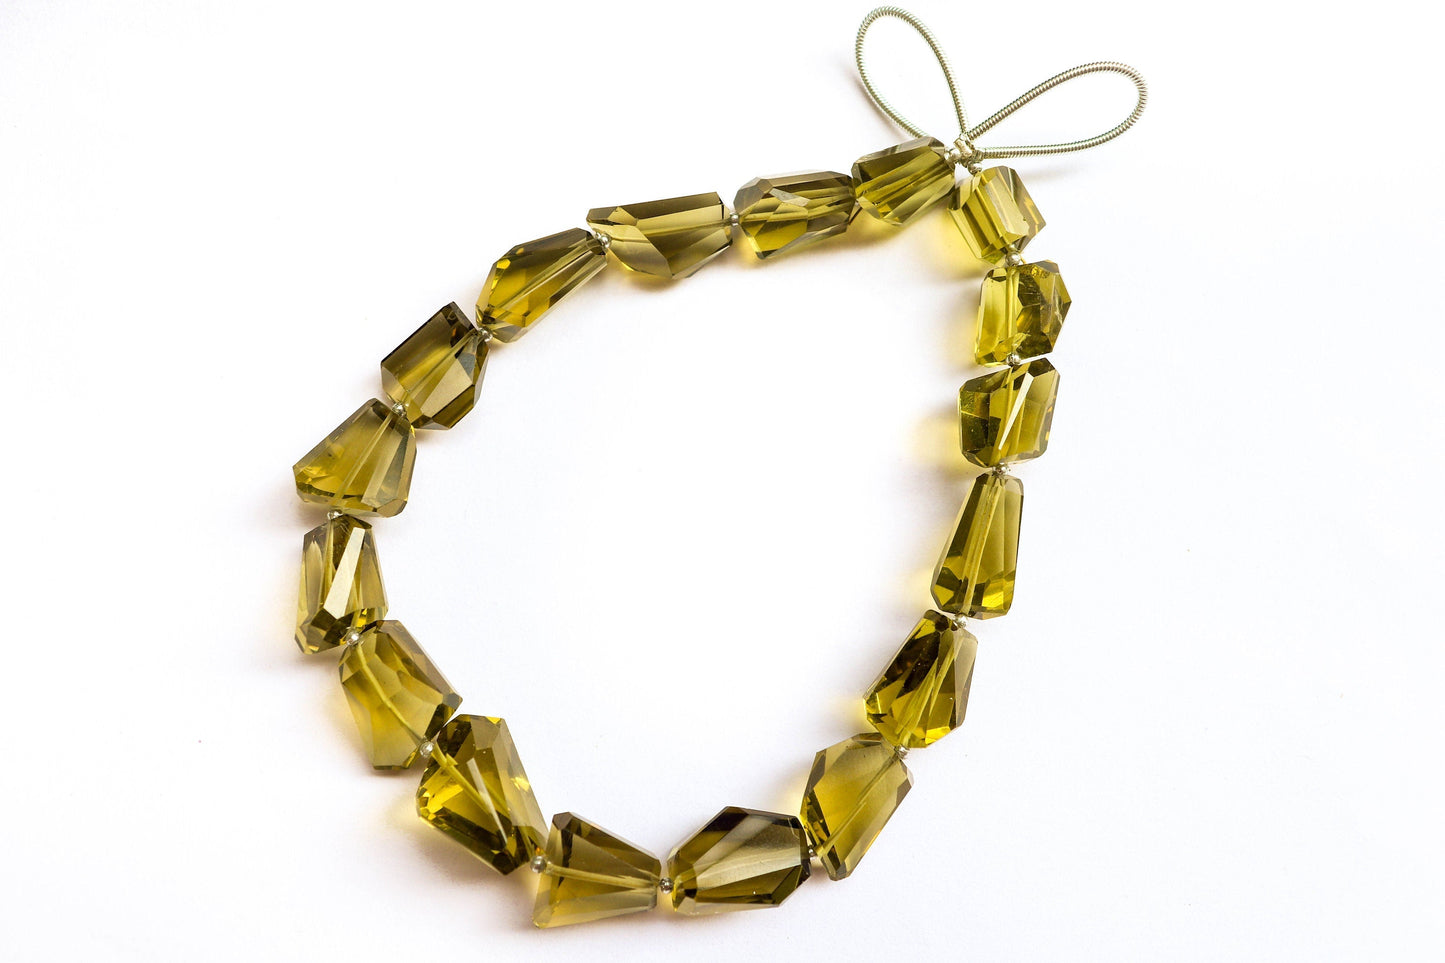 Olive Quartz beads Geometrical cut uneven shape tumbles | 17 Pieces | Natural Olive Quartz tumbles | Olive Quartz faceted beads Beadsforyourjewelry